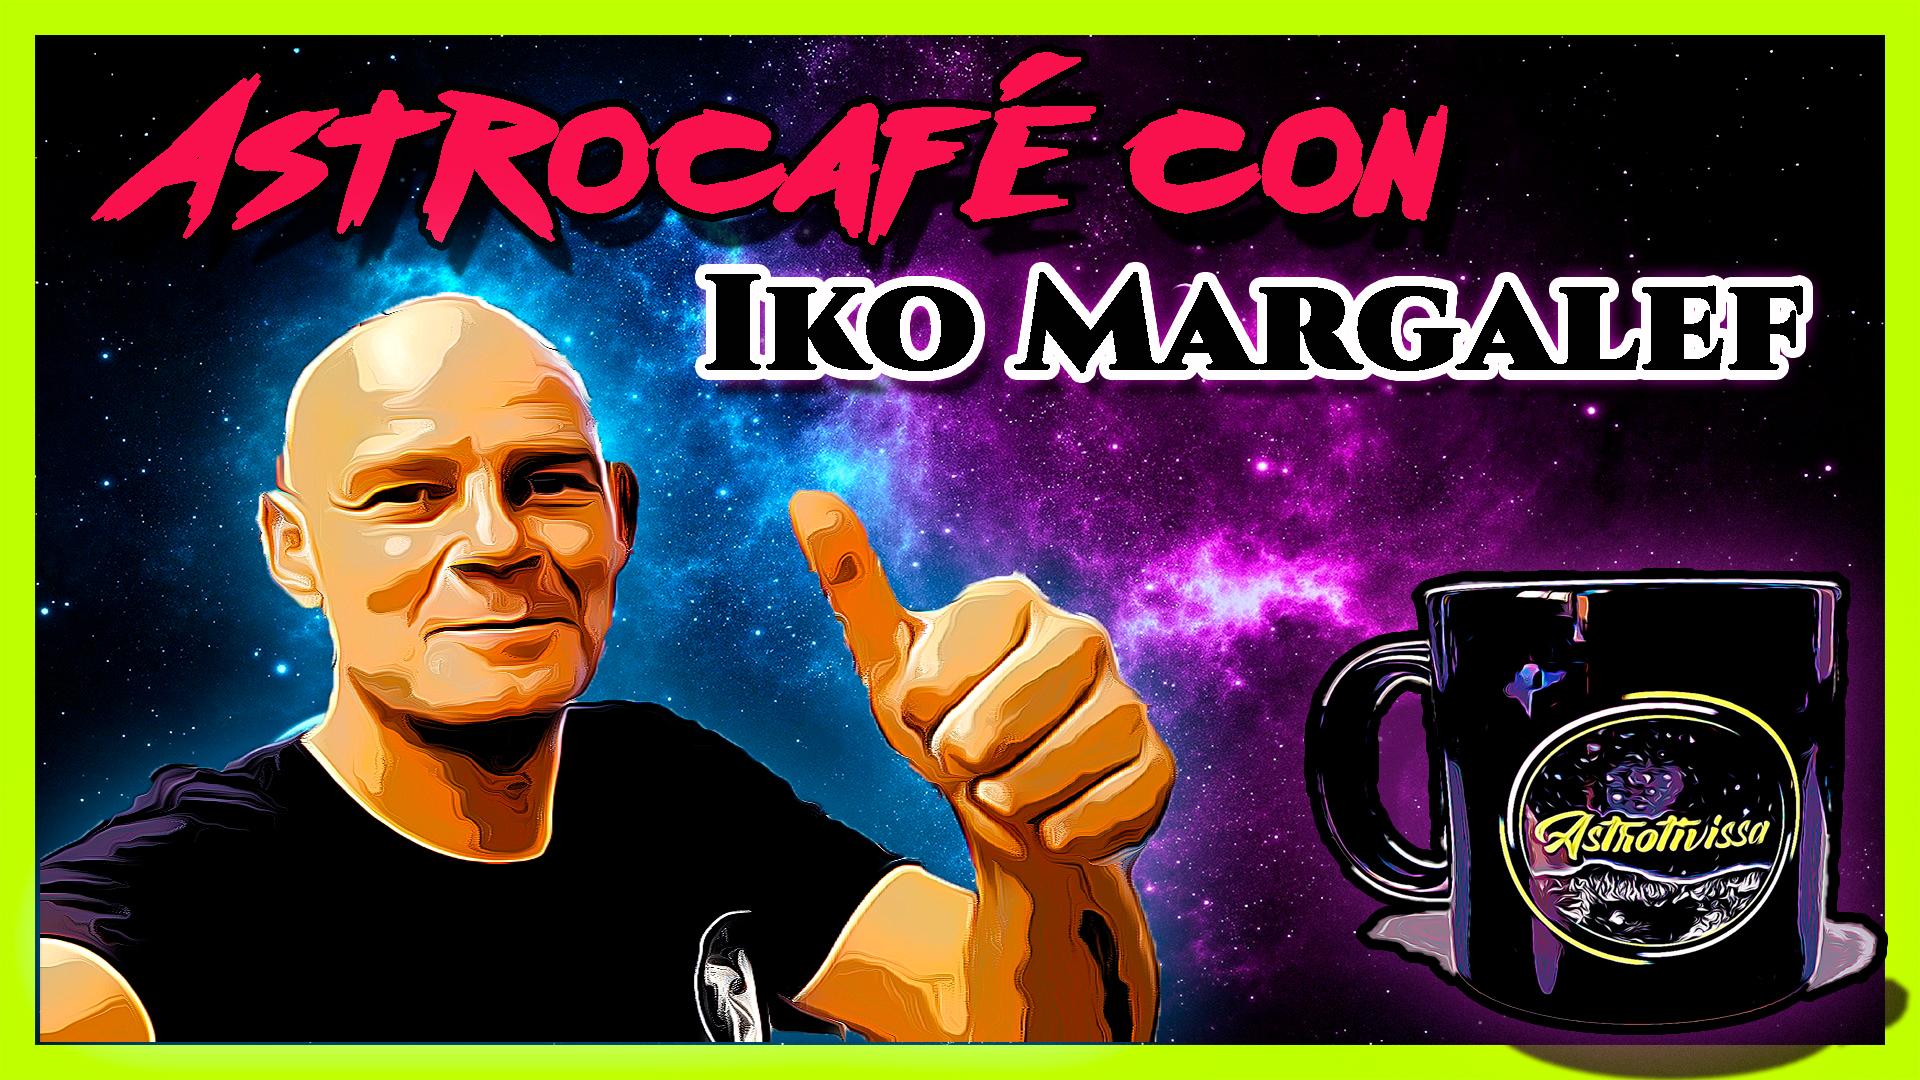 Astrocafé Iko margalef